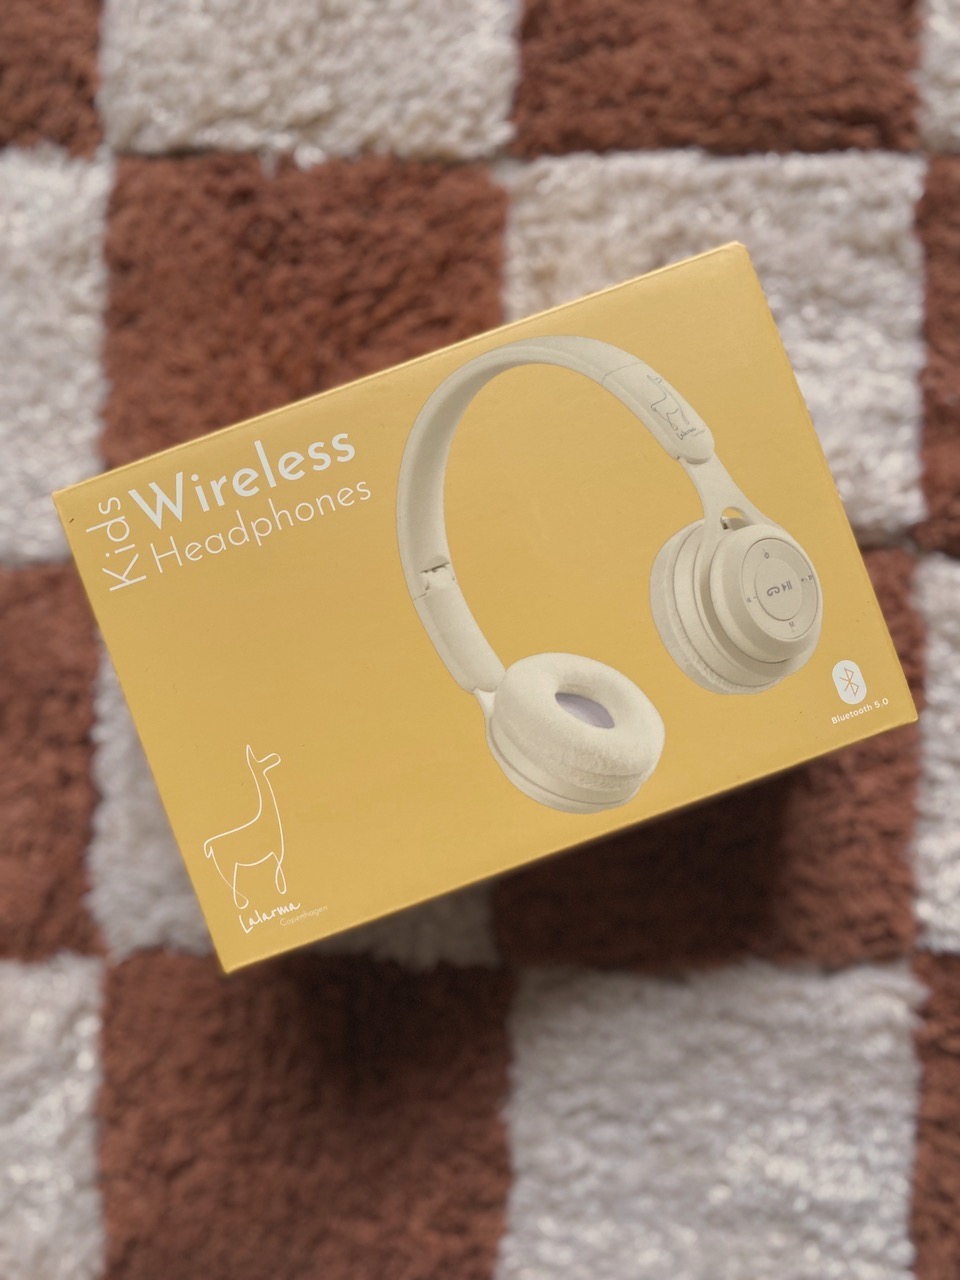 Bild Wireless Headphones (1)